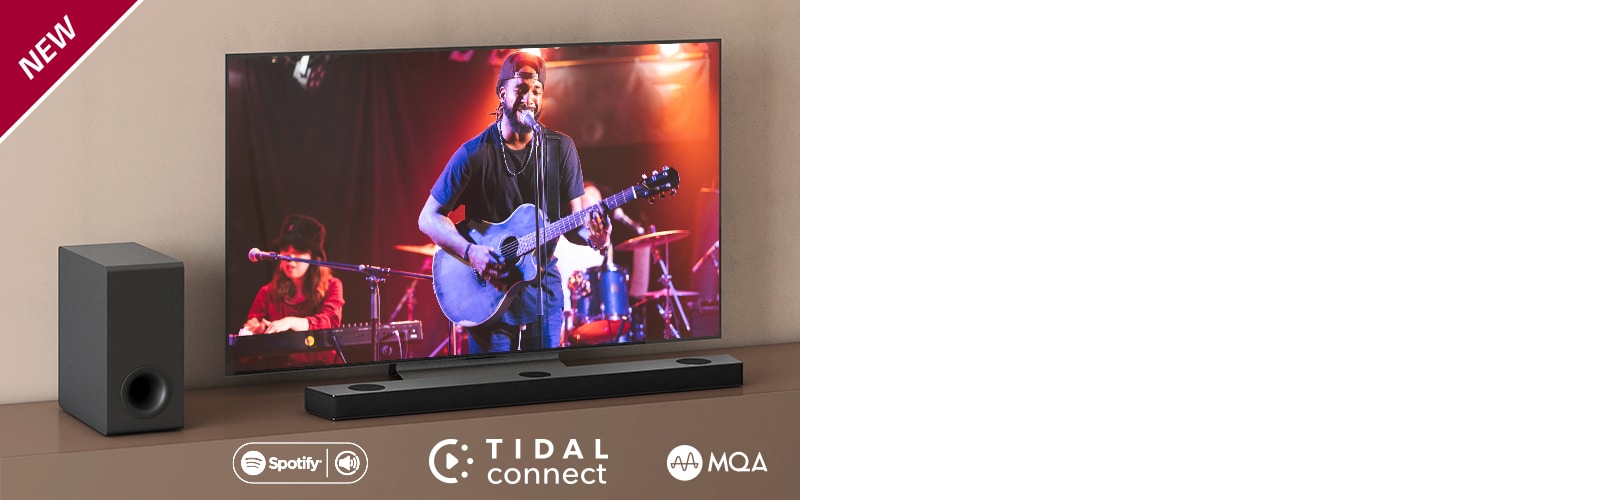 تلفاز LG موضوع على الرف البني، ومكبر الصوت S95QR من LG موضوع أمام التلفاز. مضخم الصوت موضوع على الجانب الأيسر من التلفاز. يعرض التلفاز مشهدًا للحفلات الموسيقية. تظهر علامة جديدة في الزاوية العلوية اليسرى.